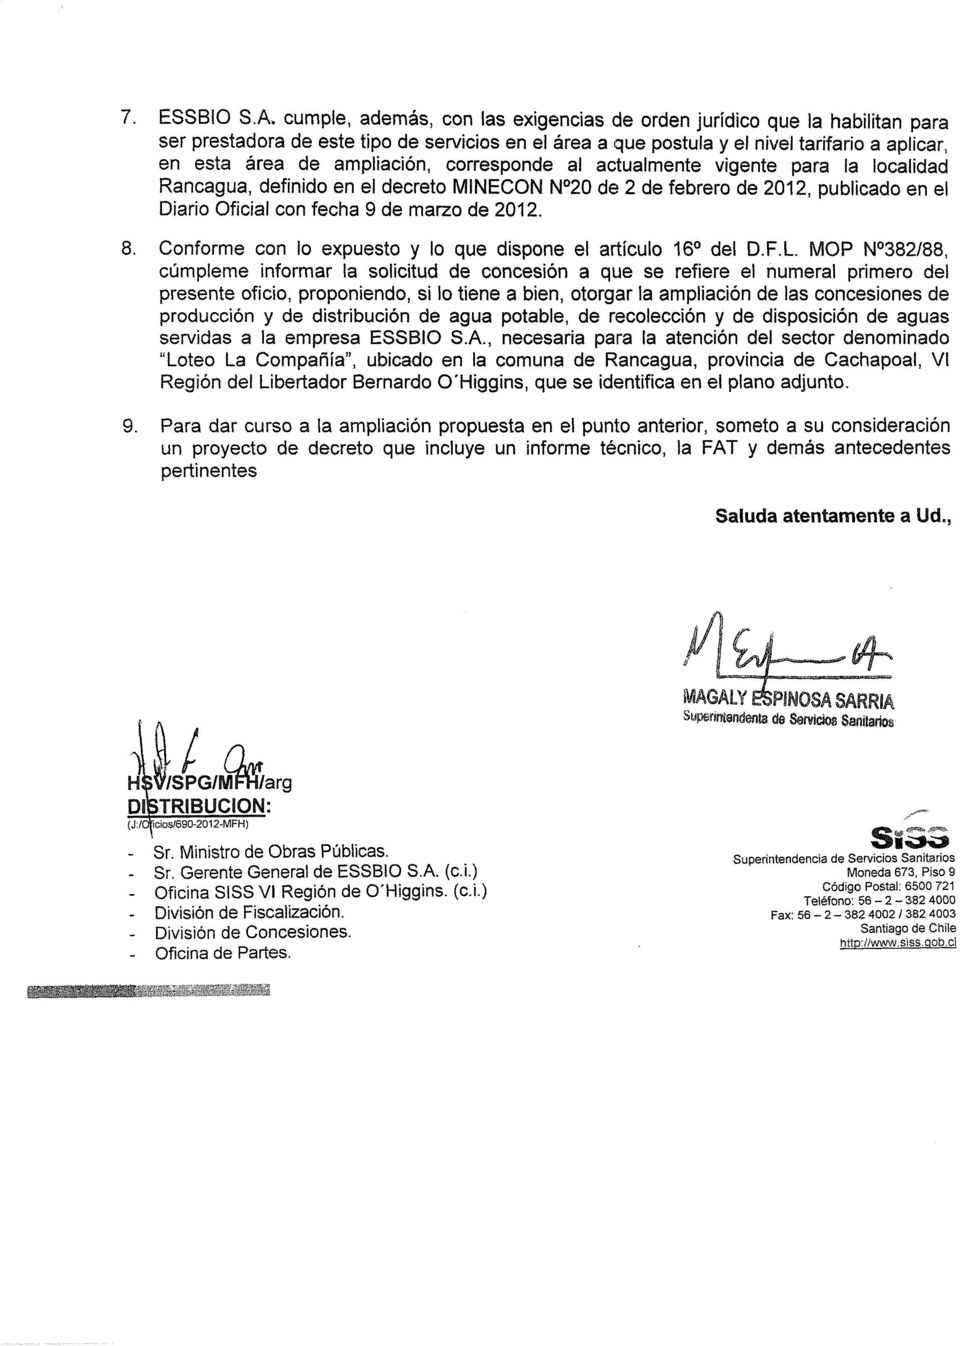 ampliación, corresponde al actualmente vigente para la localidad Rancagua, definido en el decreto MINECON N 20 de 2 de febrero de 2012, publicado en el Diario Oficial con fecha 9 de marzo de 2012. 8.